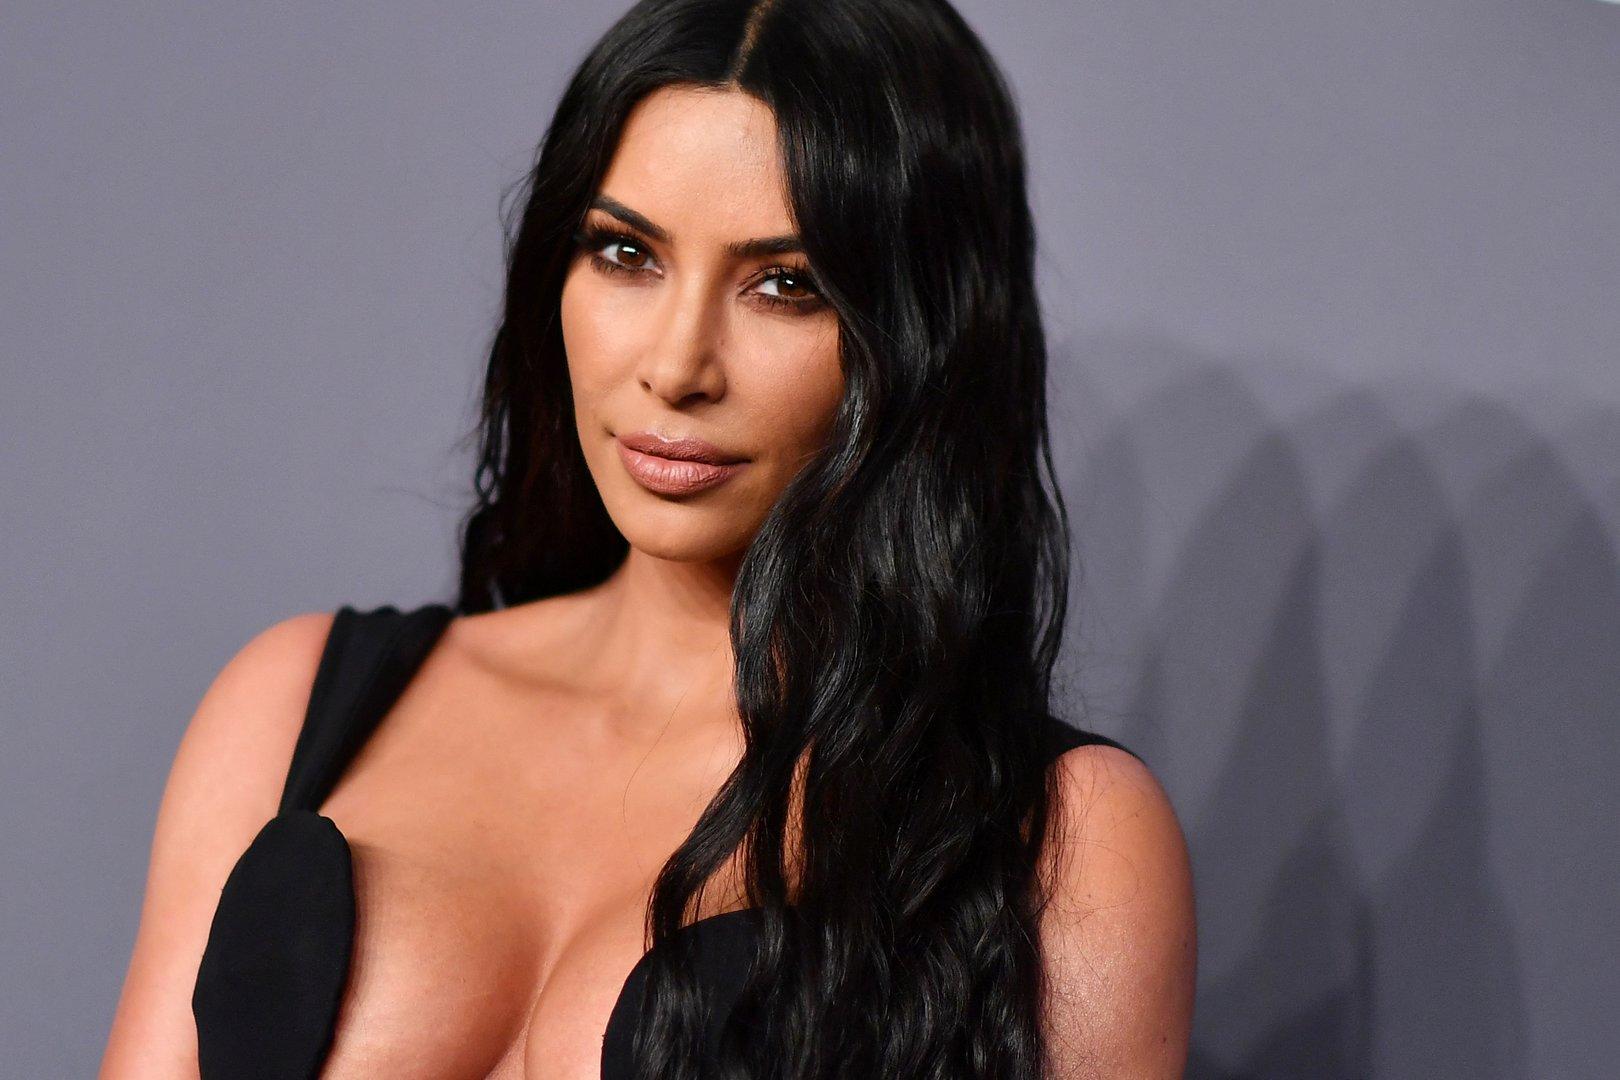 Begehrt: Kim Kardashian von Royals und Milliardären hofiert